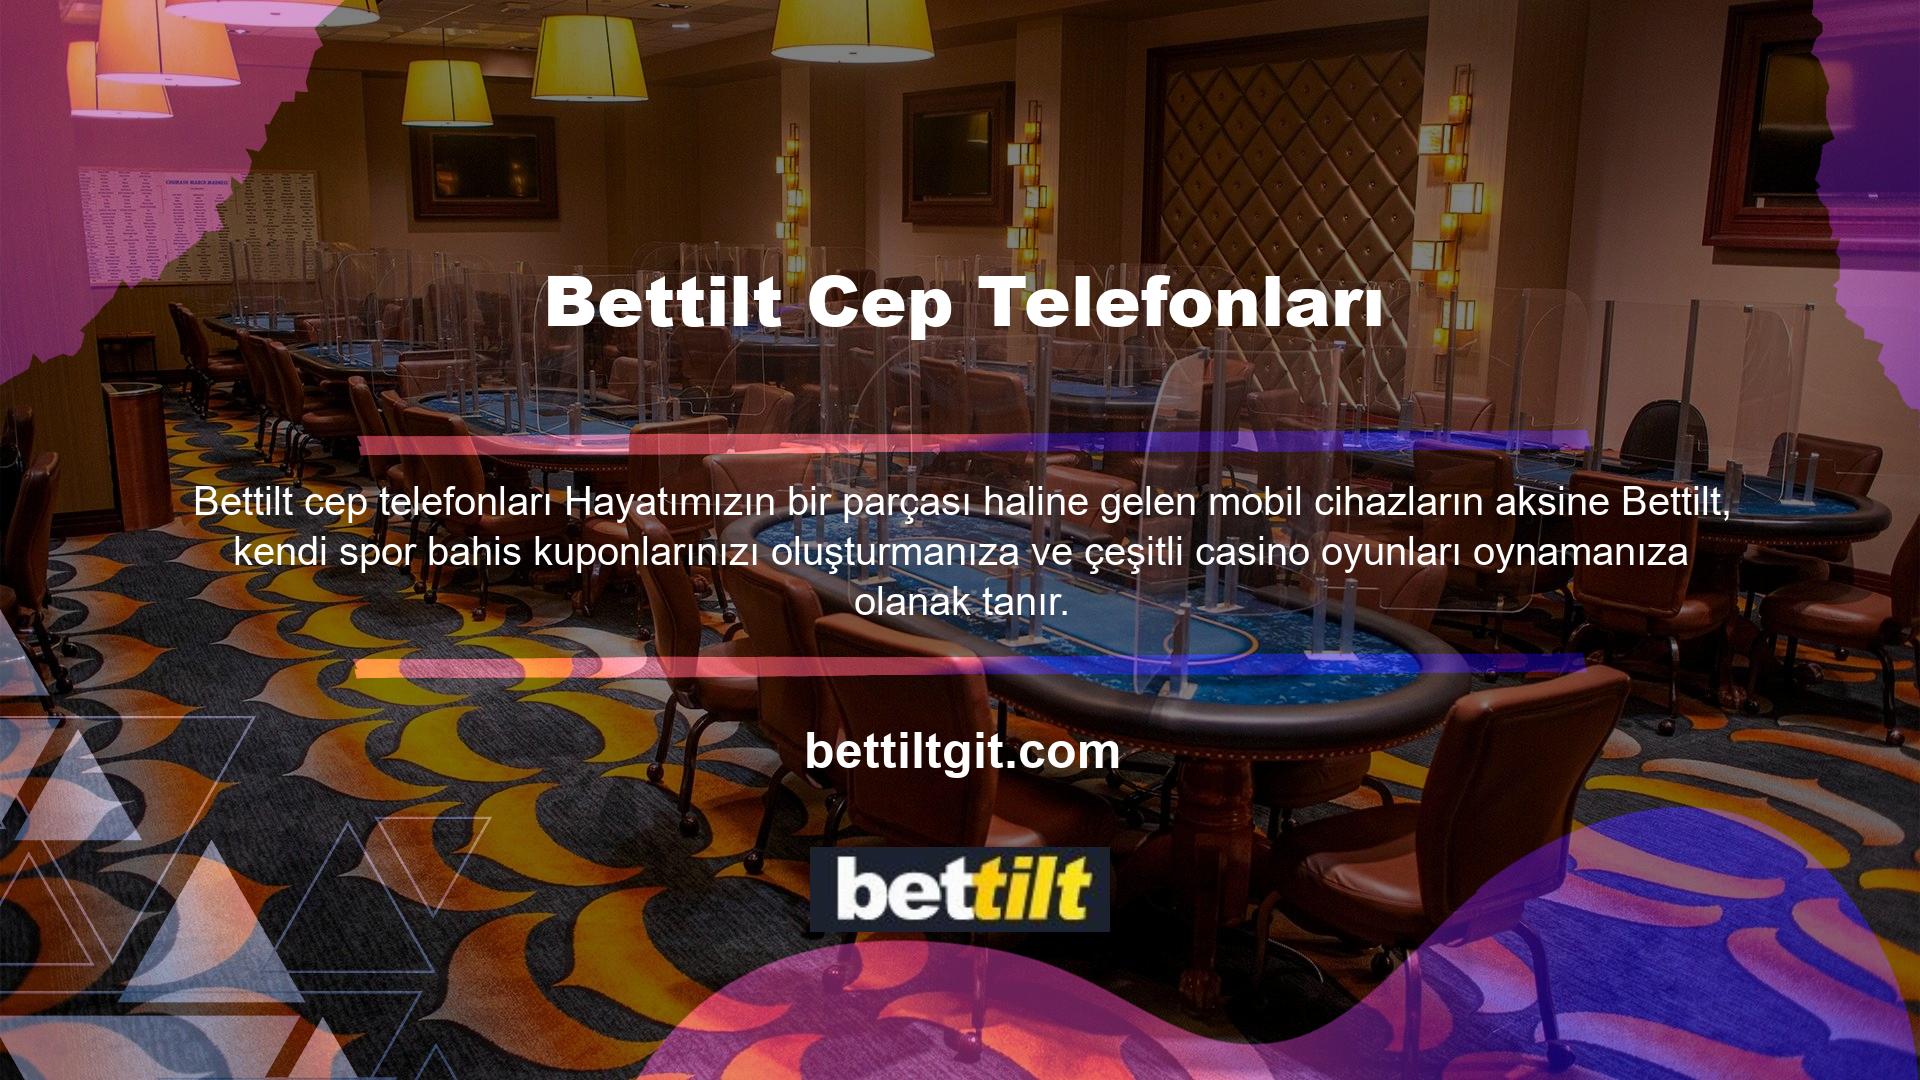 Bettilt online bahis ve casino siteleri, gelişmiş altyapısı sayesinde mobil cihazlardan bile kullanıcılara hizmet verebilmektedir